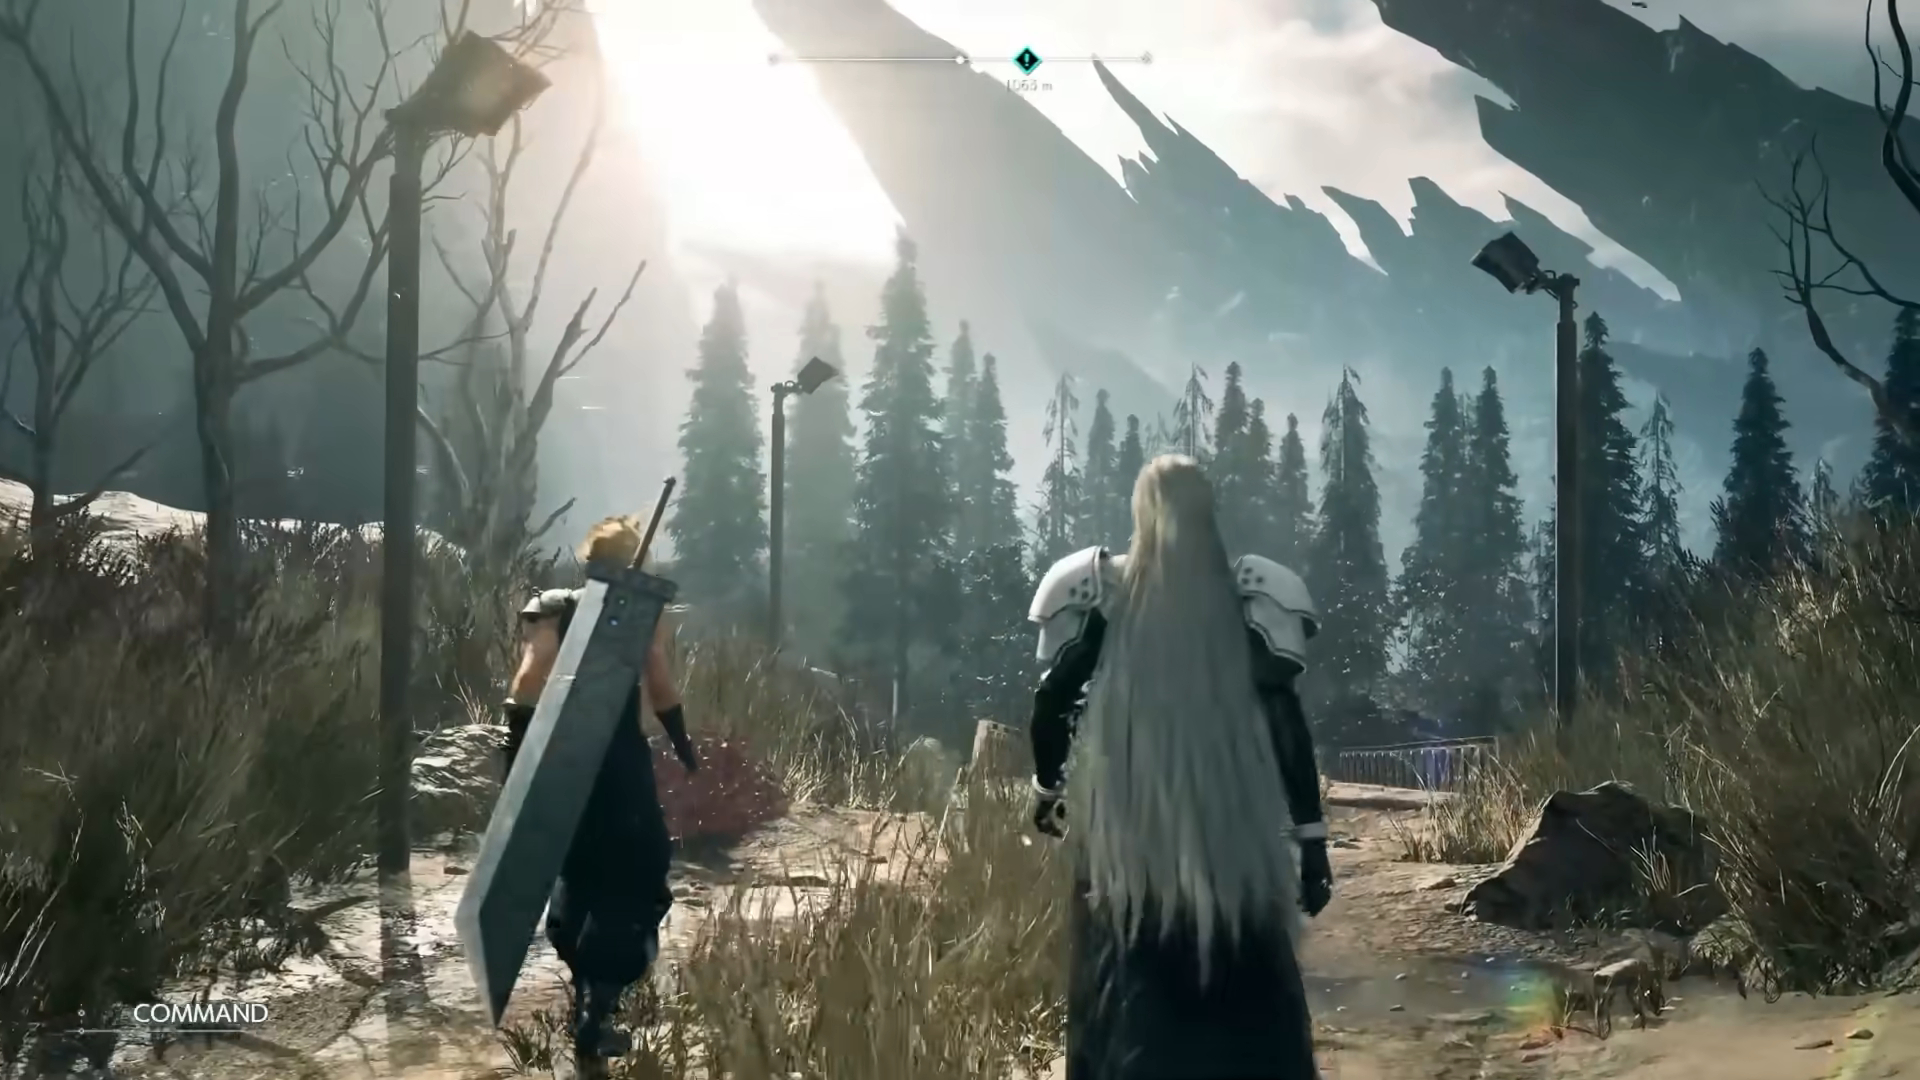 Cloud e Sephiroth caminhando em direção a uma ponte.